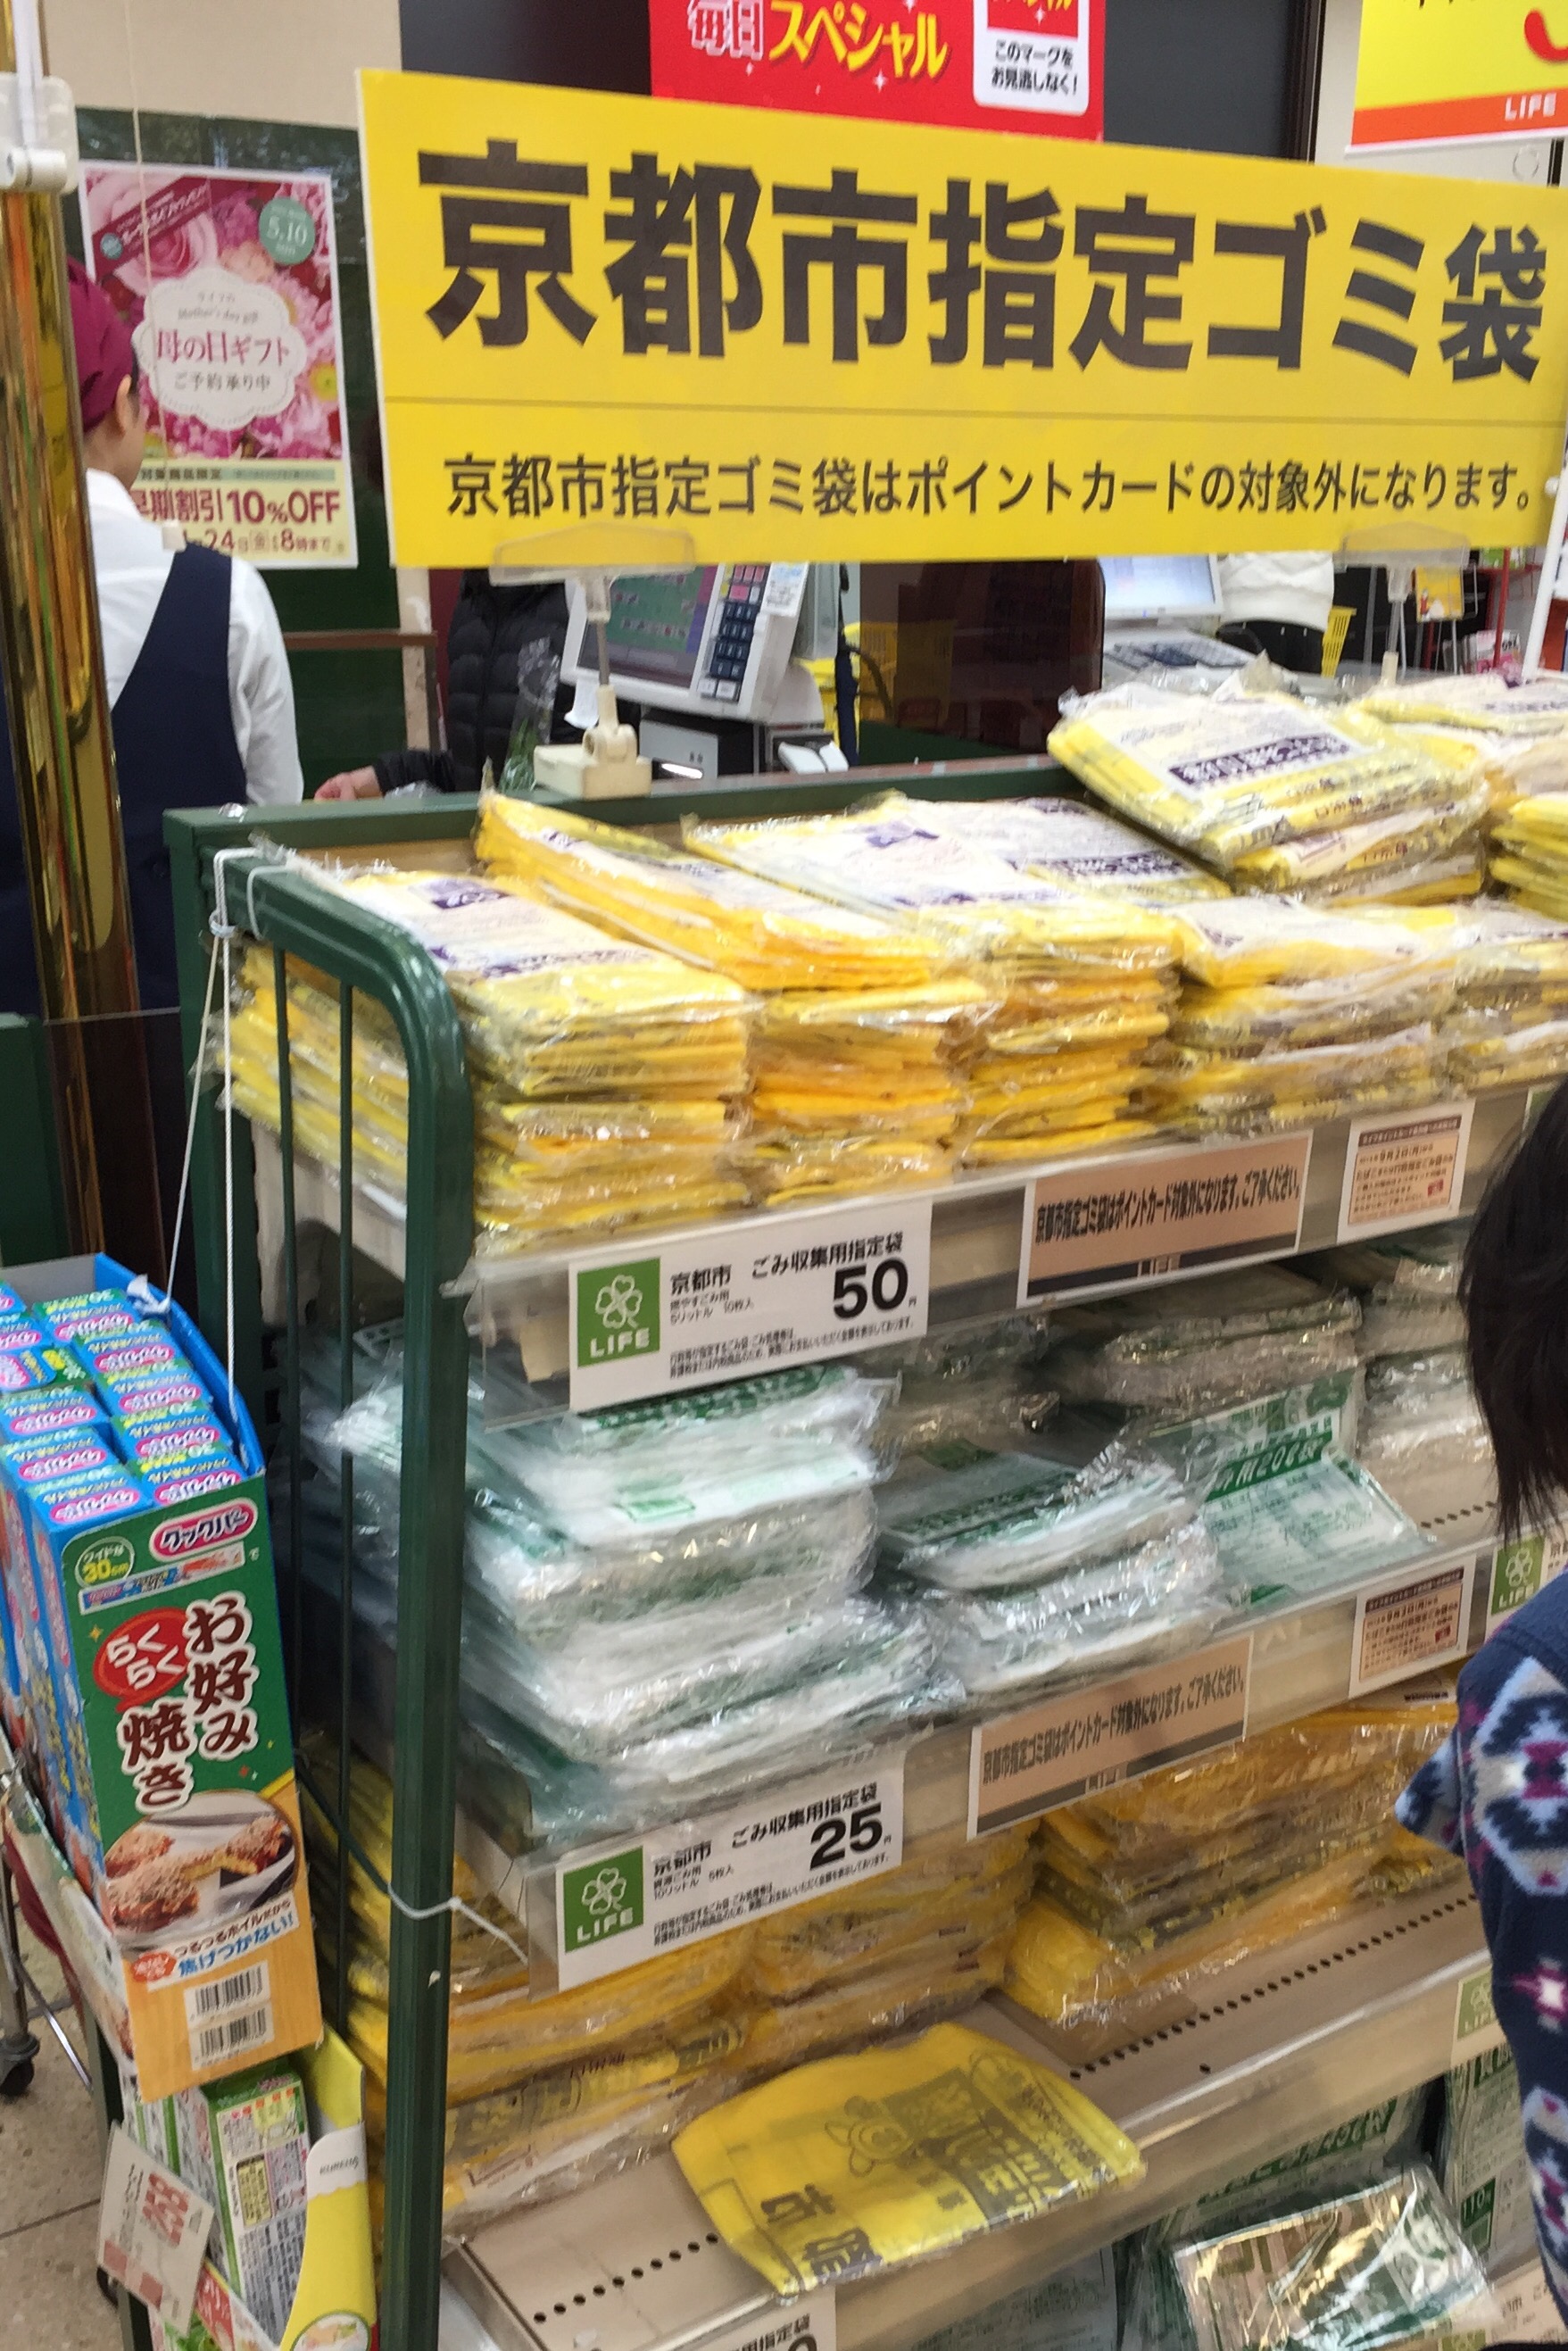 京都市ゴミ収集指定袋 の購入でもauウォレットポイントがもらえます Auウォレットのポイントを完全把握